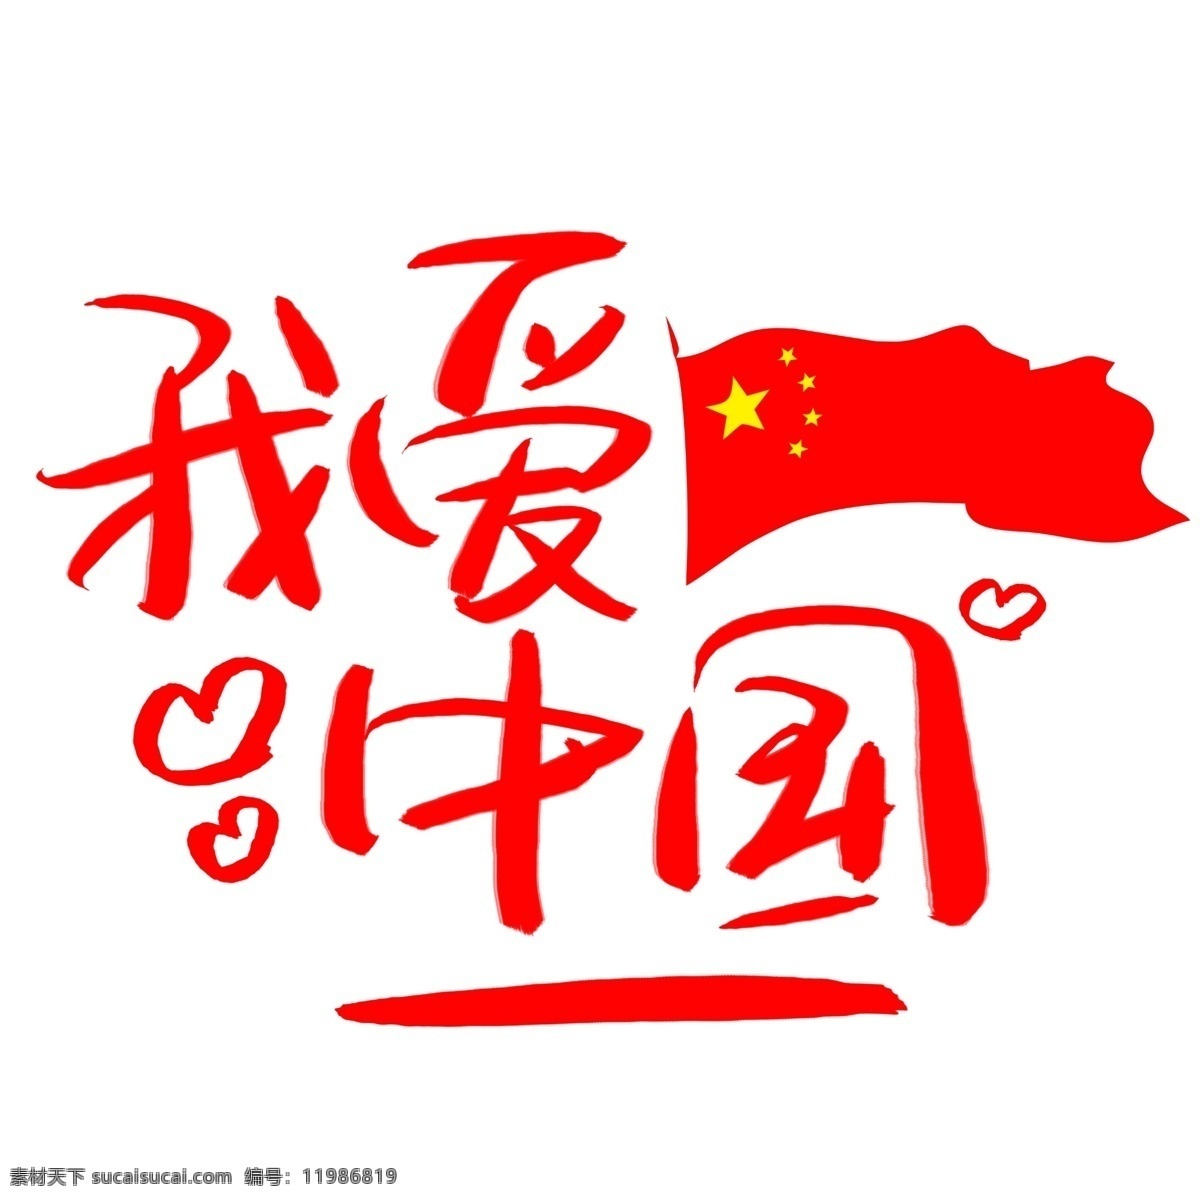 我爱 中国 手写 手绘 书法艺术 字 我爱中国 爱国 祖国 国家 骄傲 我骄傲 自豪